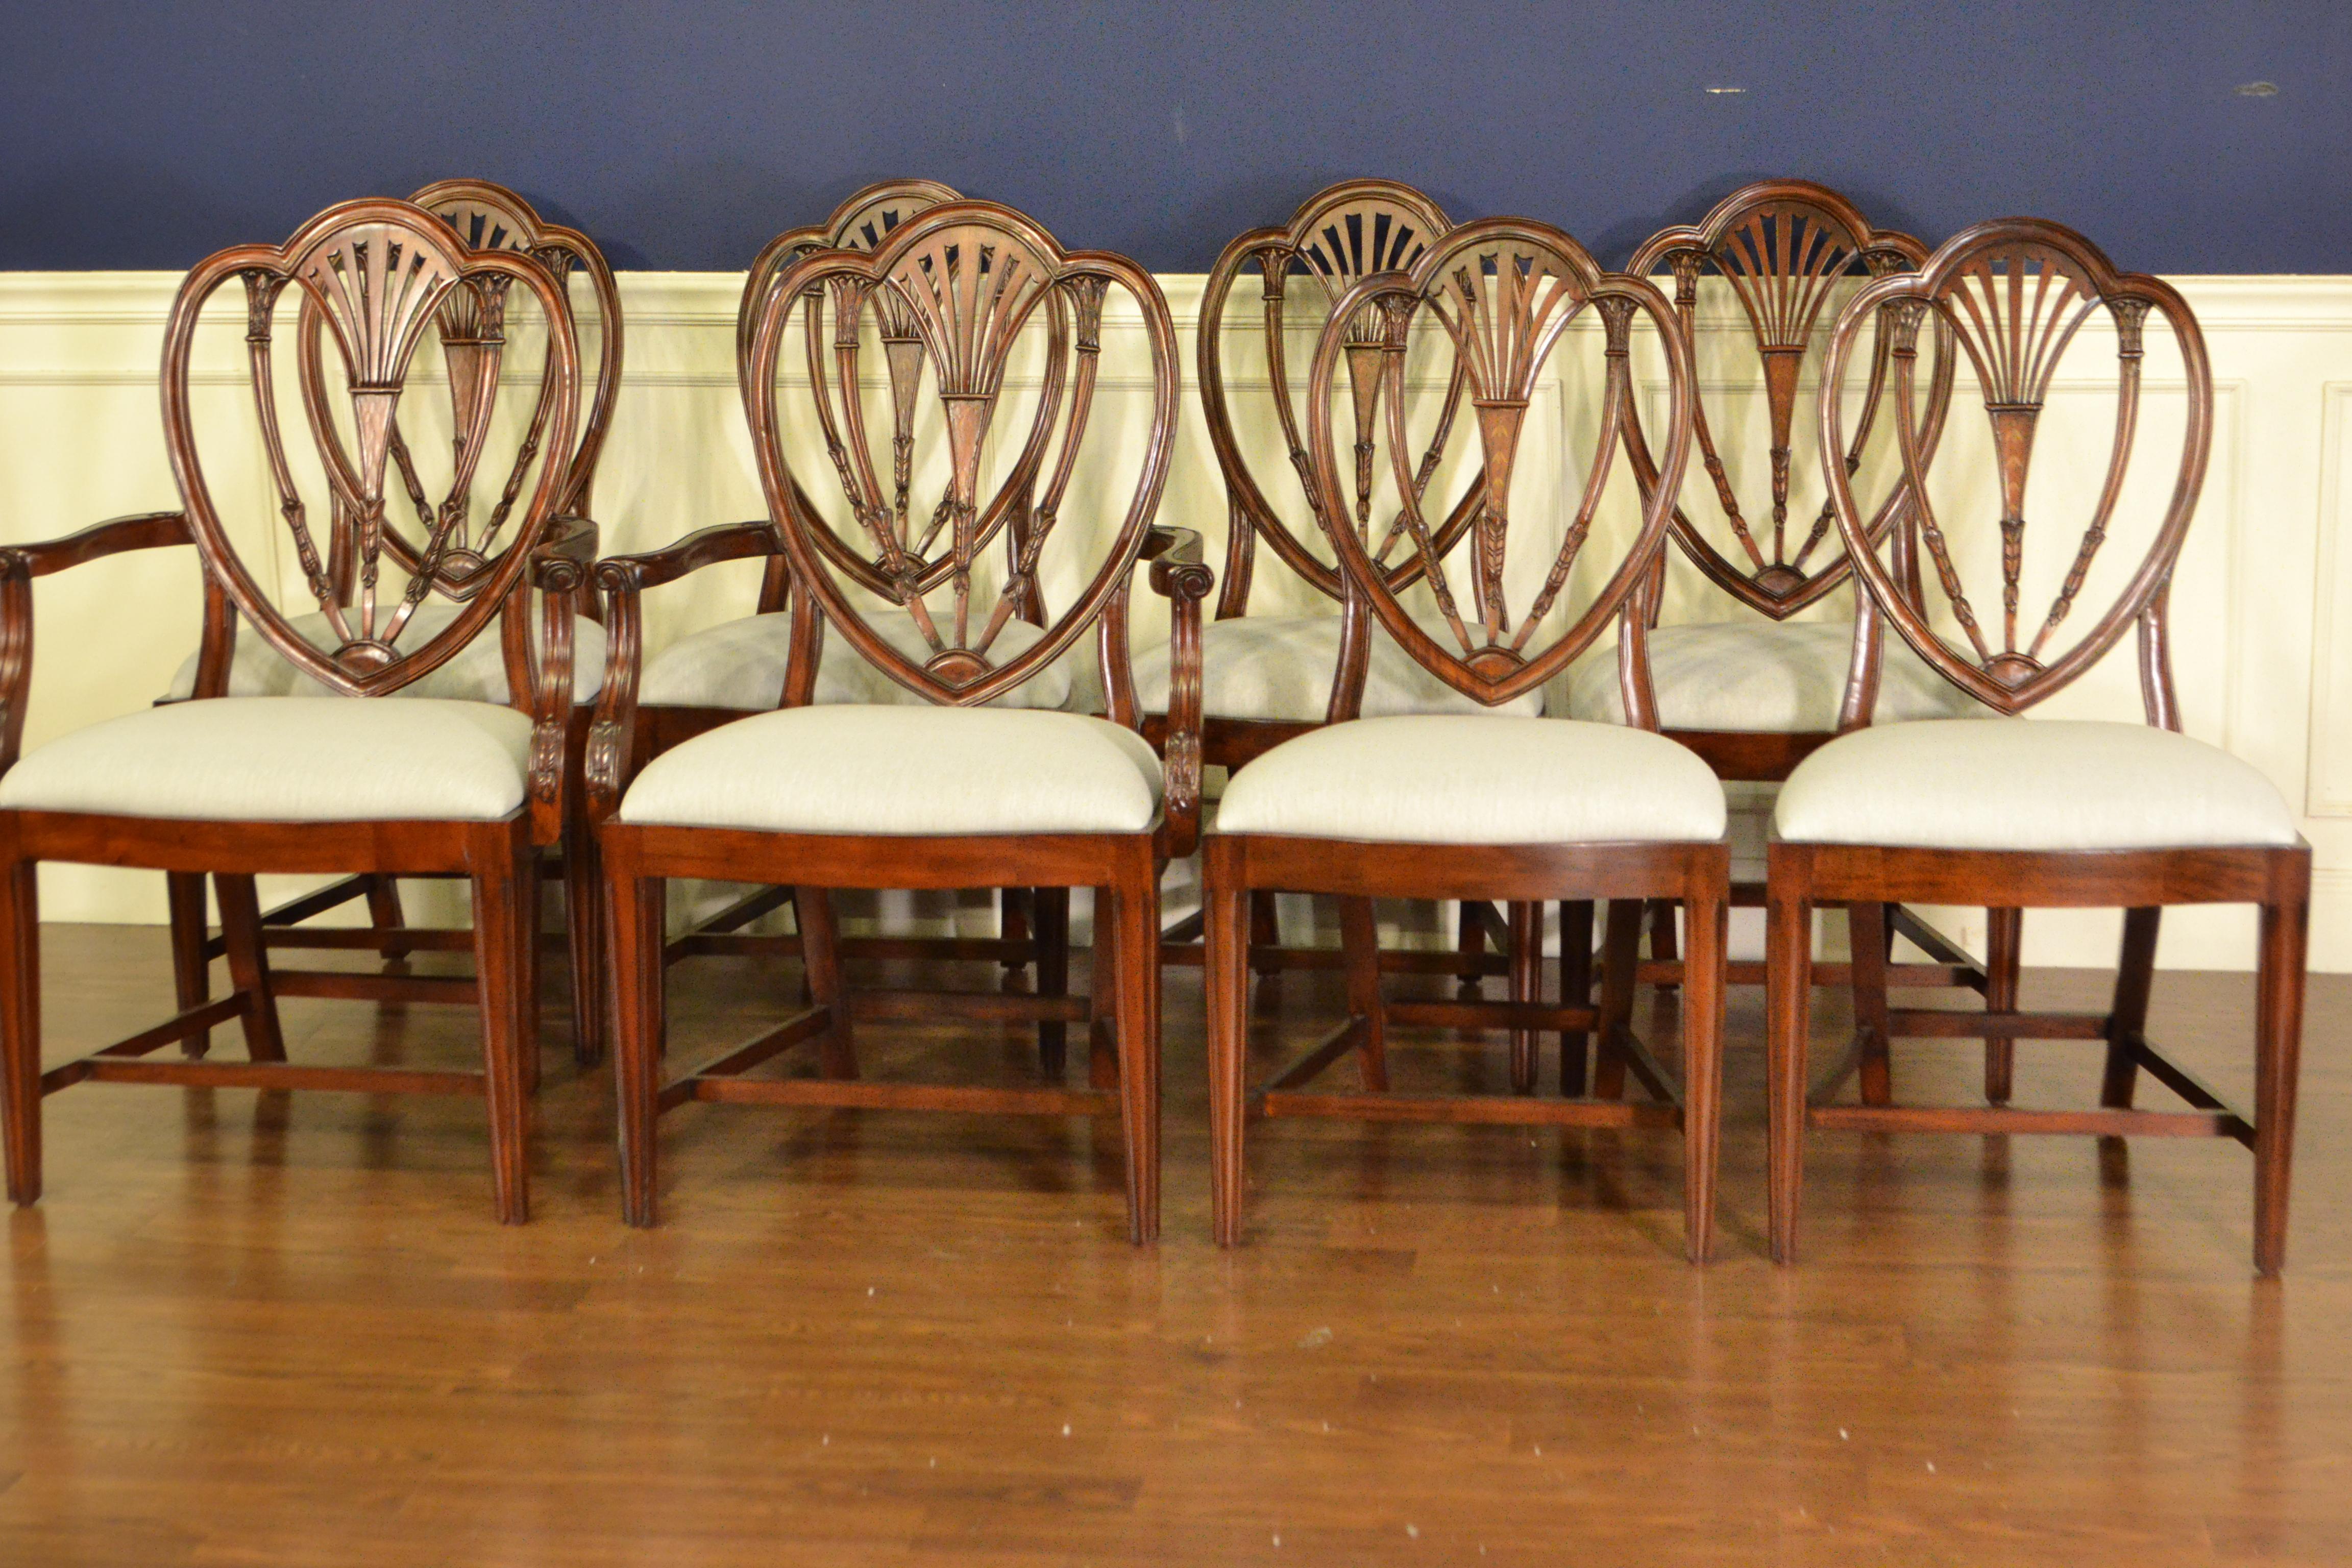 Il s'agit de nouvelles chaises de salle à manger traditionnelles en acajou. Leur design s'inspire des chaises Hepplewhite Dining de la période Régence. Ils présentent le style classique de Hepplewhite avec des dos de bouclier et des pieds fuselés